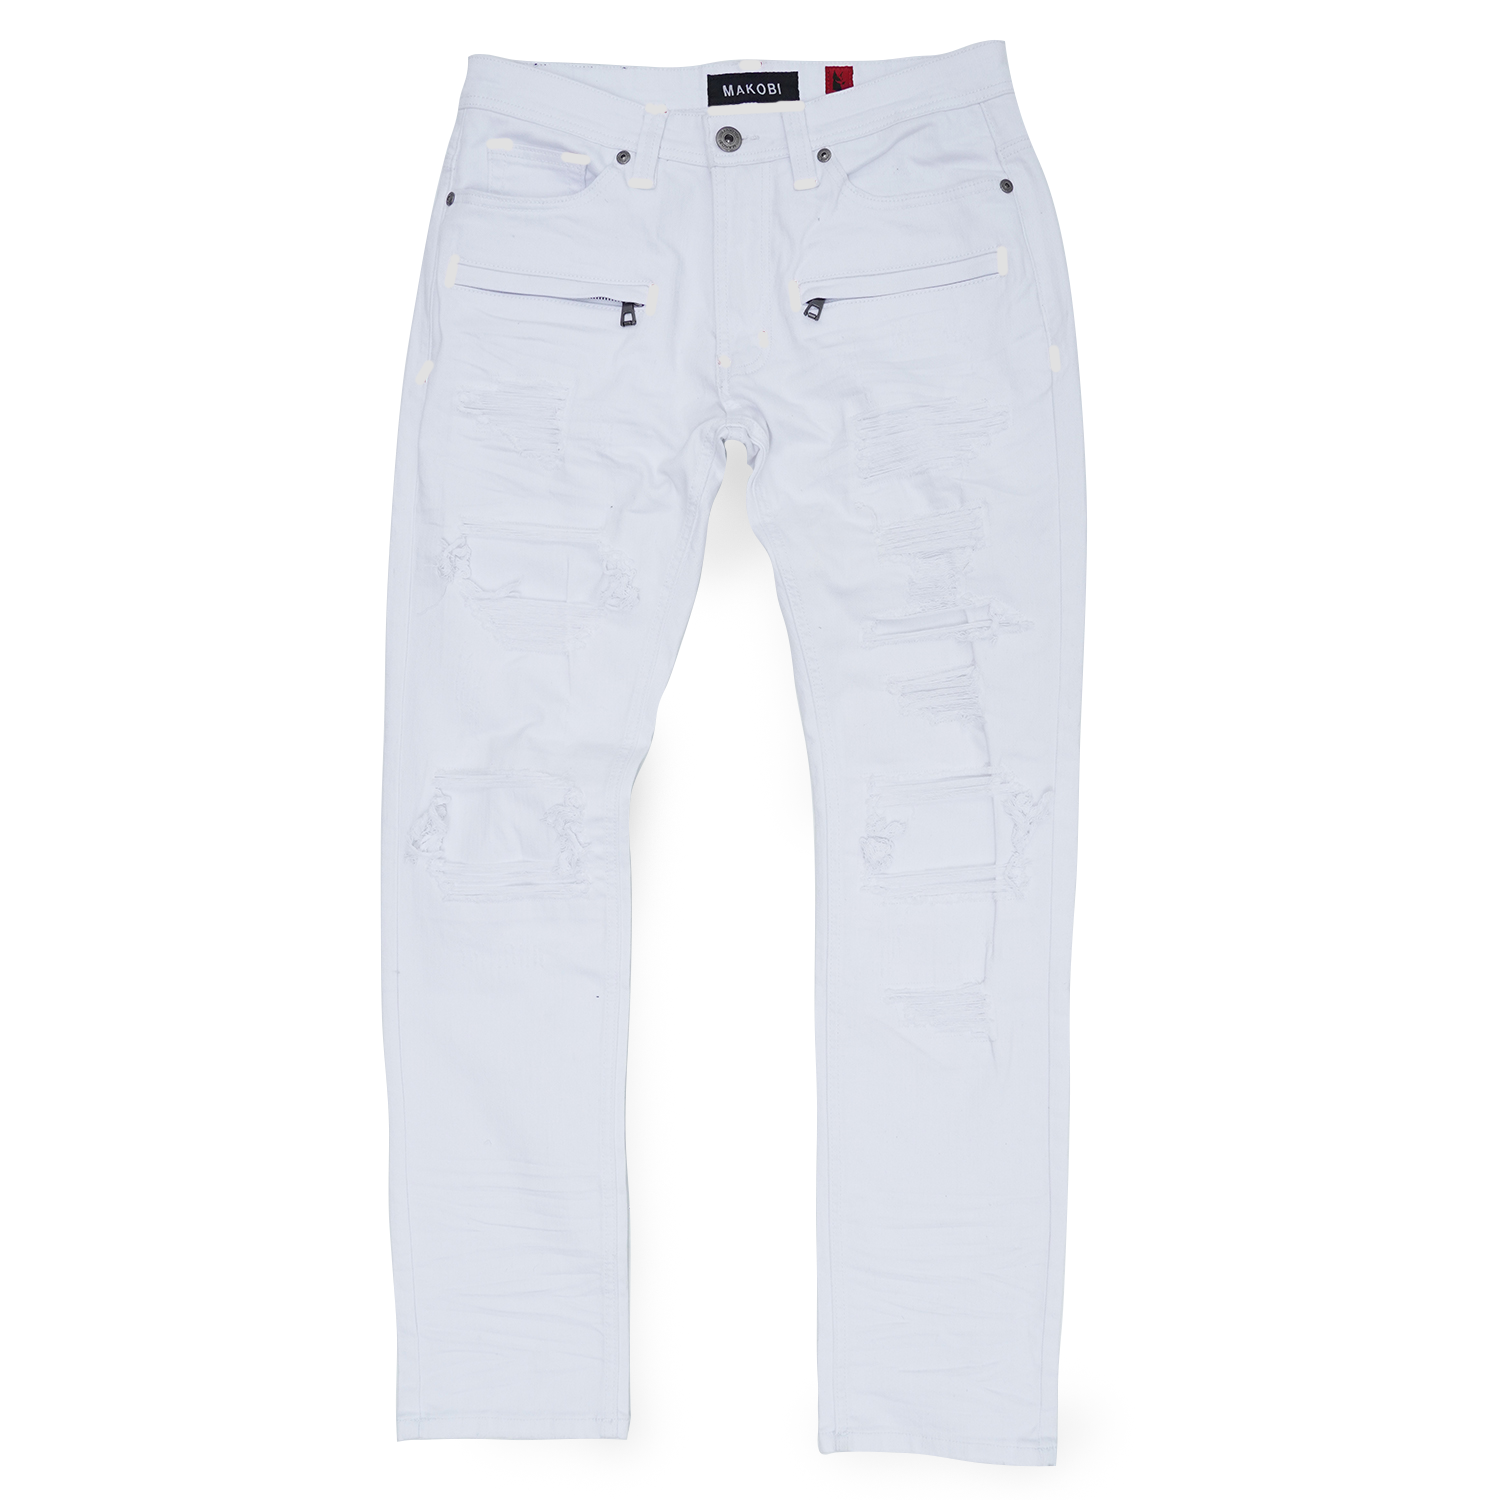 M1944 Pipa Shredded Jeans - White